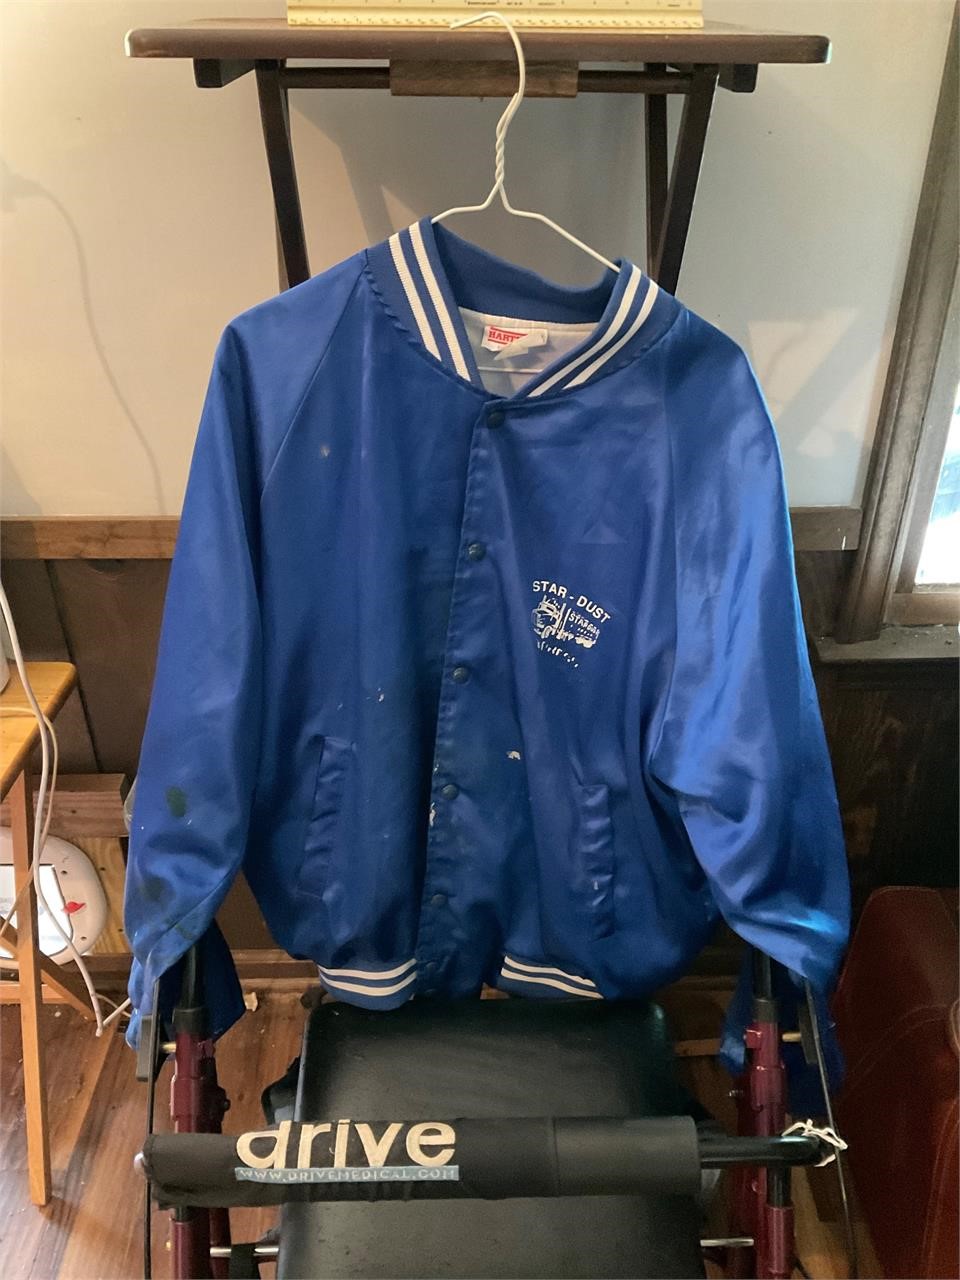 Vintage jacket